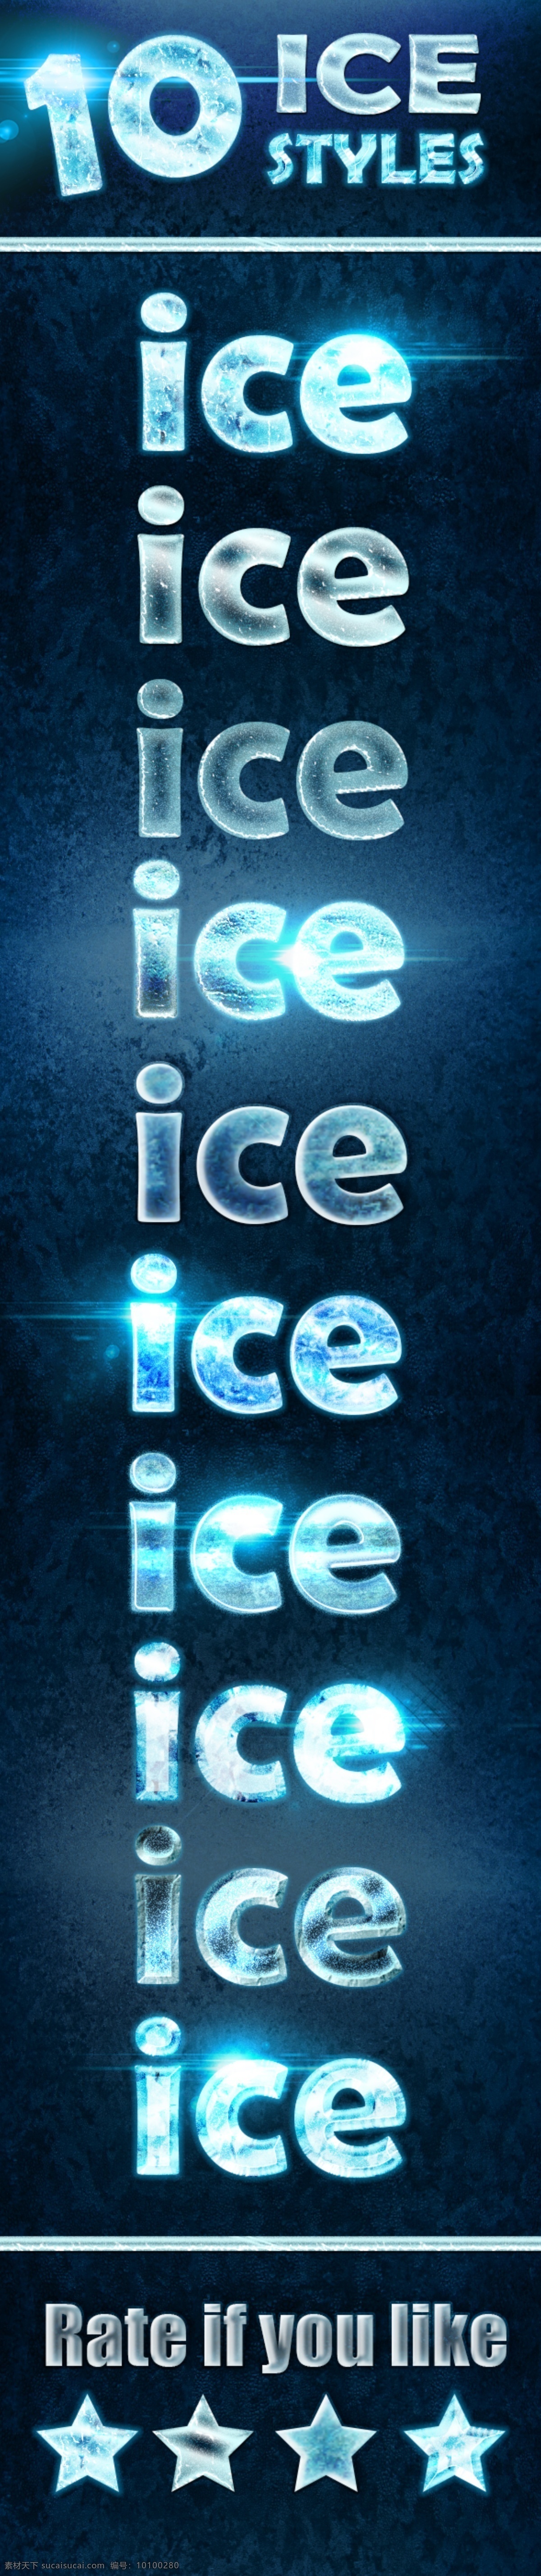 冬季 蓝色 冰冻 效果 字体 样式 ps样式 ps素材 字体样式 冬季样式 冰冻字体 冰冻效果 蓝色风格 冬雪样式 冰爽效果 mounilyass ice styles